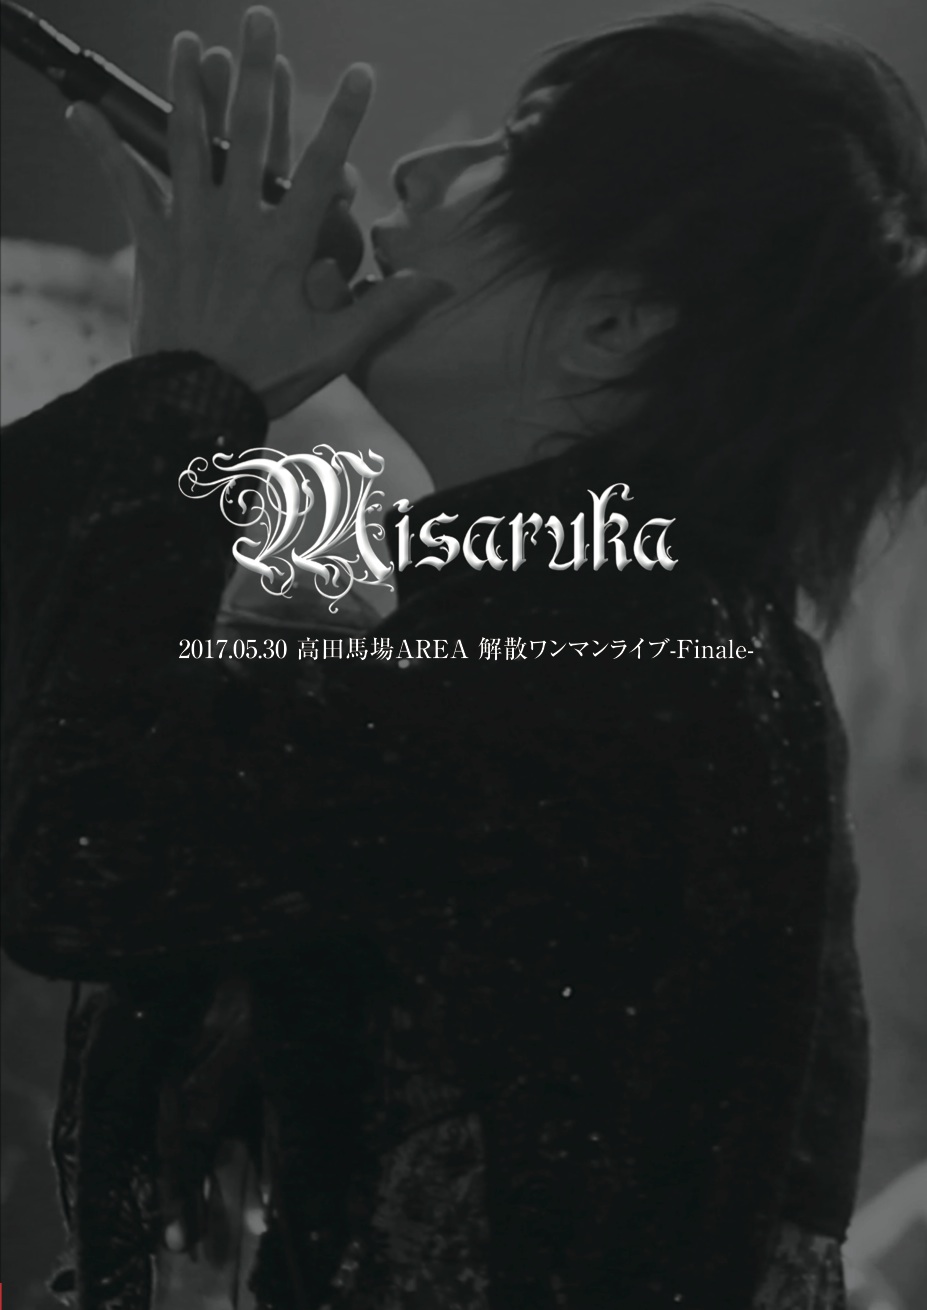 Misaruka ( ミサルカ )  の DVD 2017.05.30 高田馬場AREA 解散ワンマンライブ-Finale-